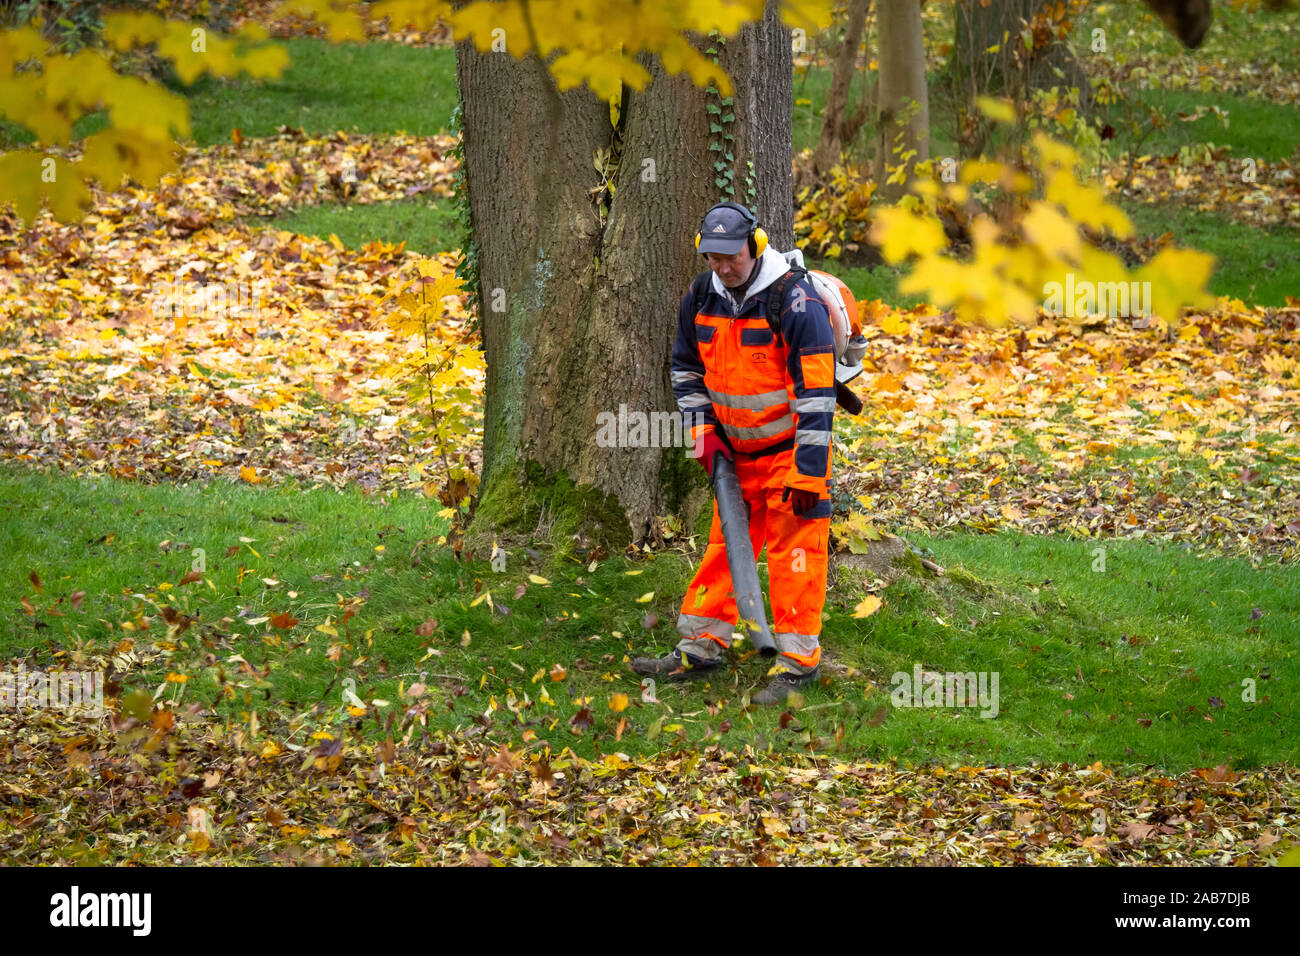 Travailleur avec une souffleuse à feuilles sac à dos dans un parc public dans la ville de Wetter, Rhénanie du Nord-Westphalie, Allemagne. Arbeiter mit einem o Laubblaeser Banque D'Images